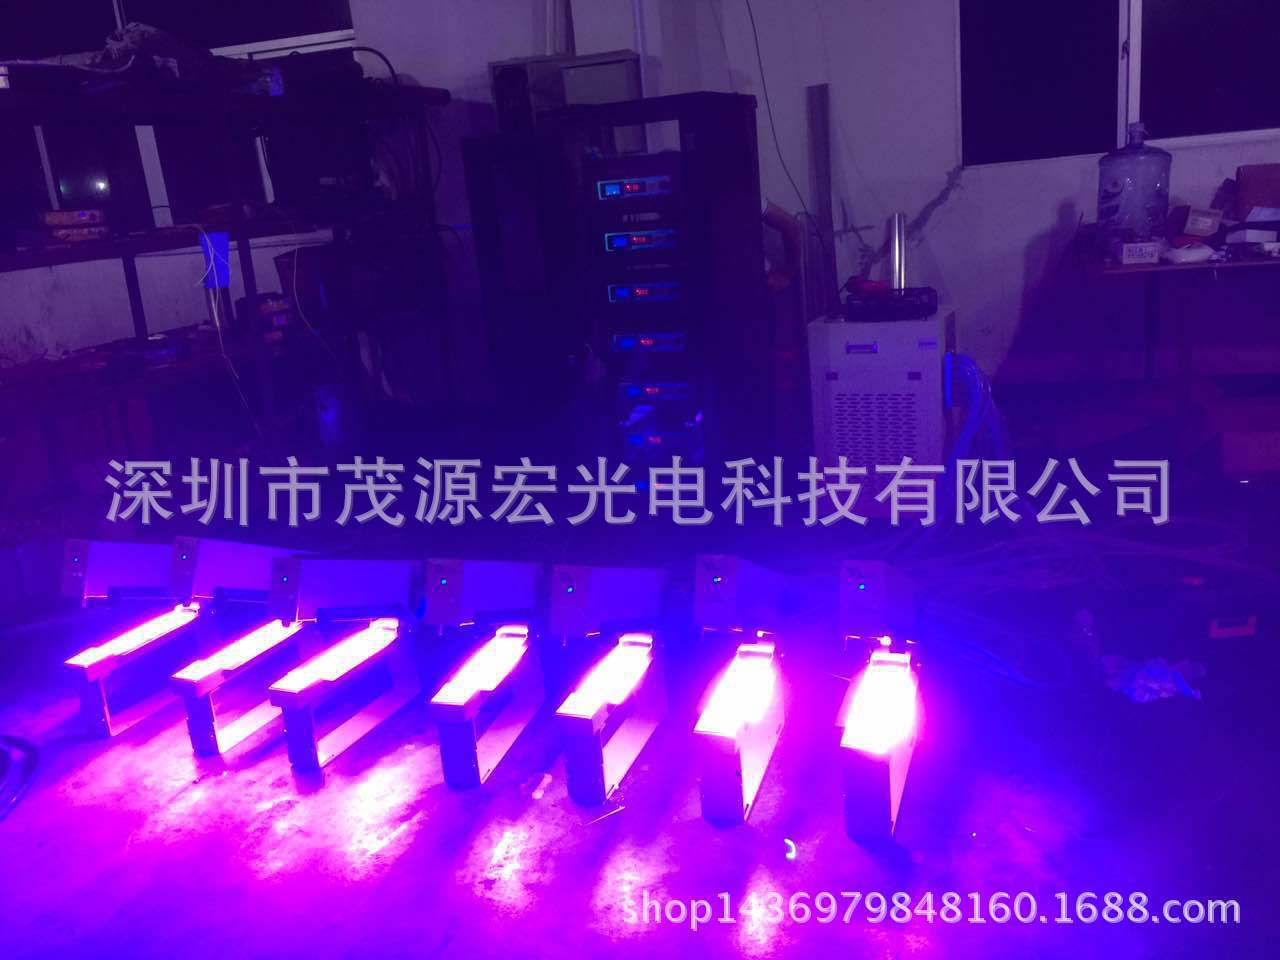 热销海德堡高速胶印机UV固化加装LED紫光固化机 UV固化设备系统